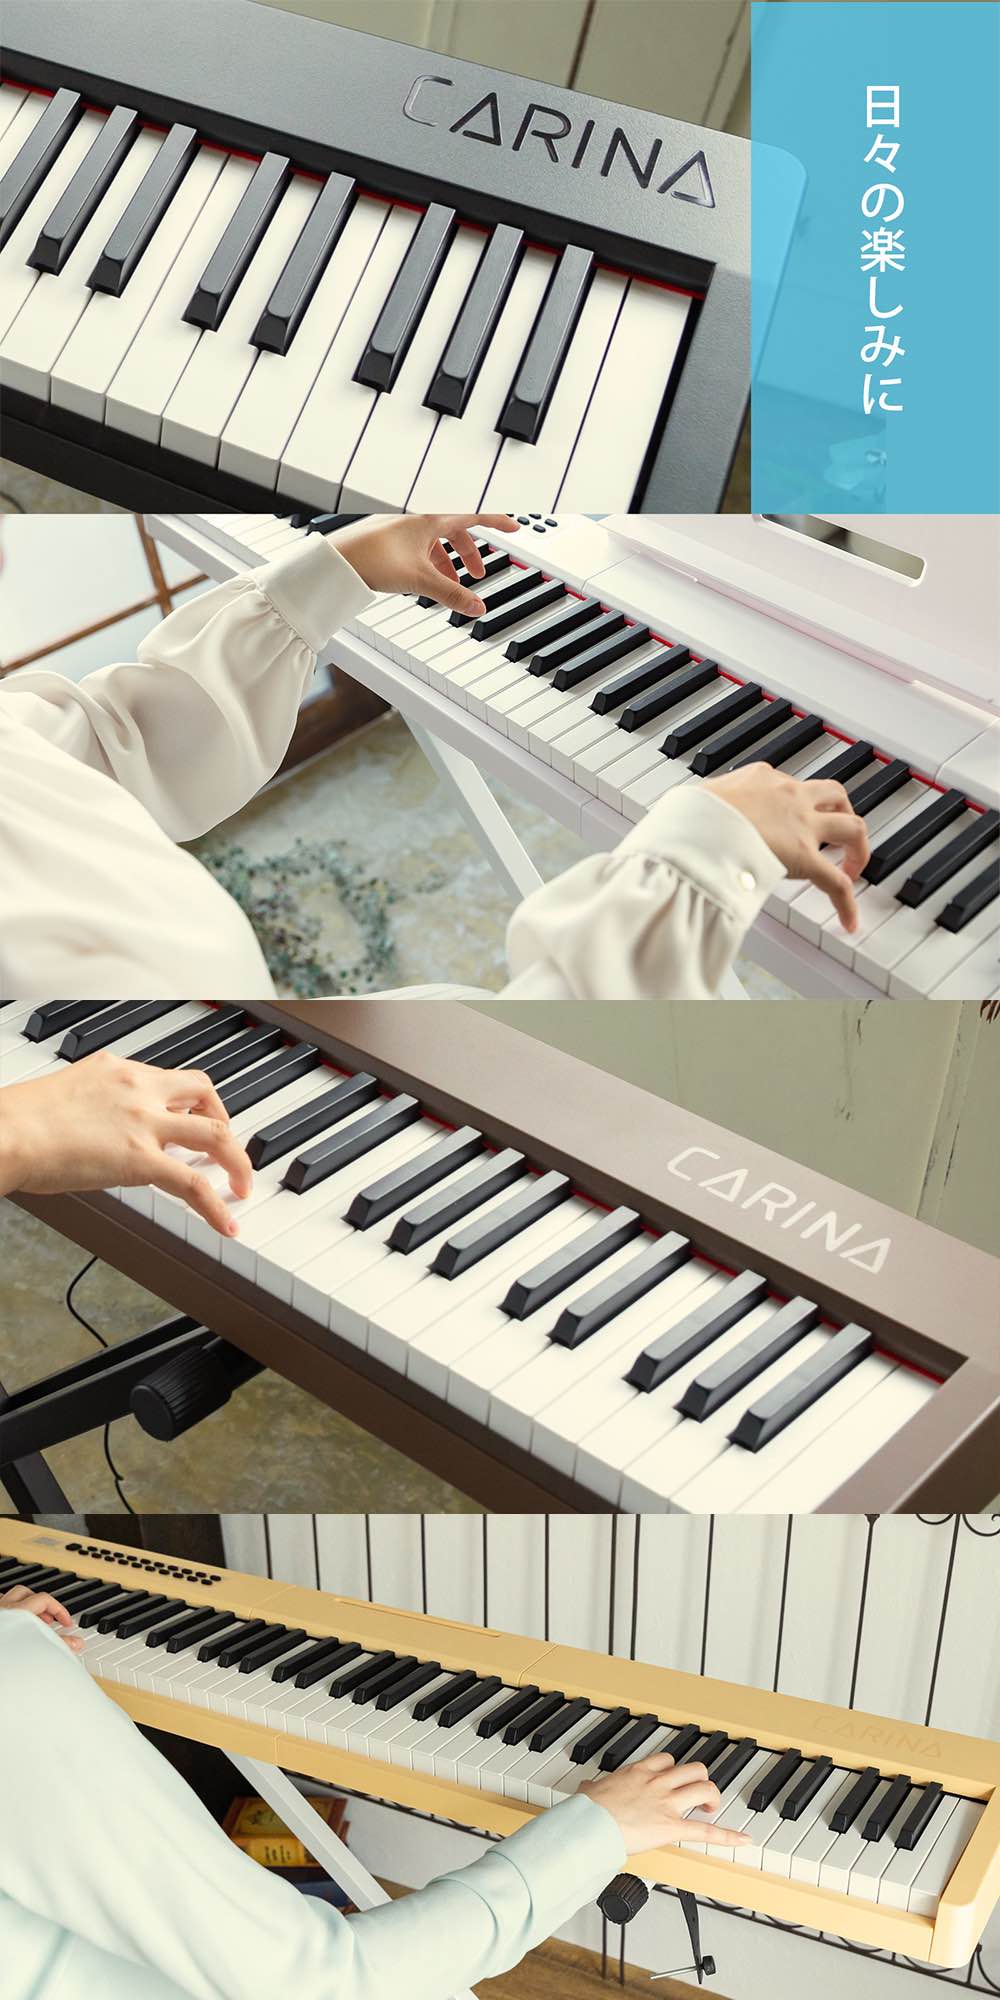 【3カラー】電子ピアノ 88鍵盤 スタンド 椅子セット dream音源 充電可能 日本語操作ボタン 軽量 キーボード コードレス スリム 軽い MIDI対応 新学期 新生活【演奏動画あり】